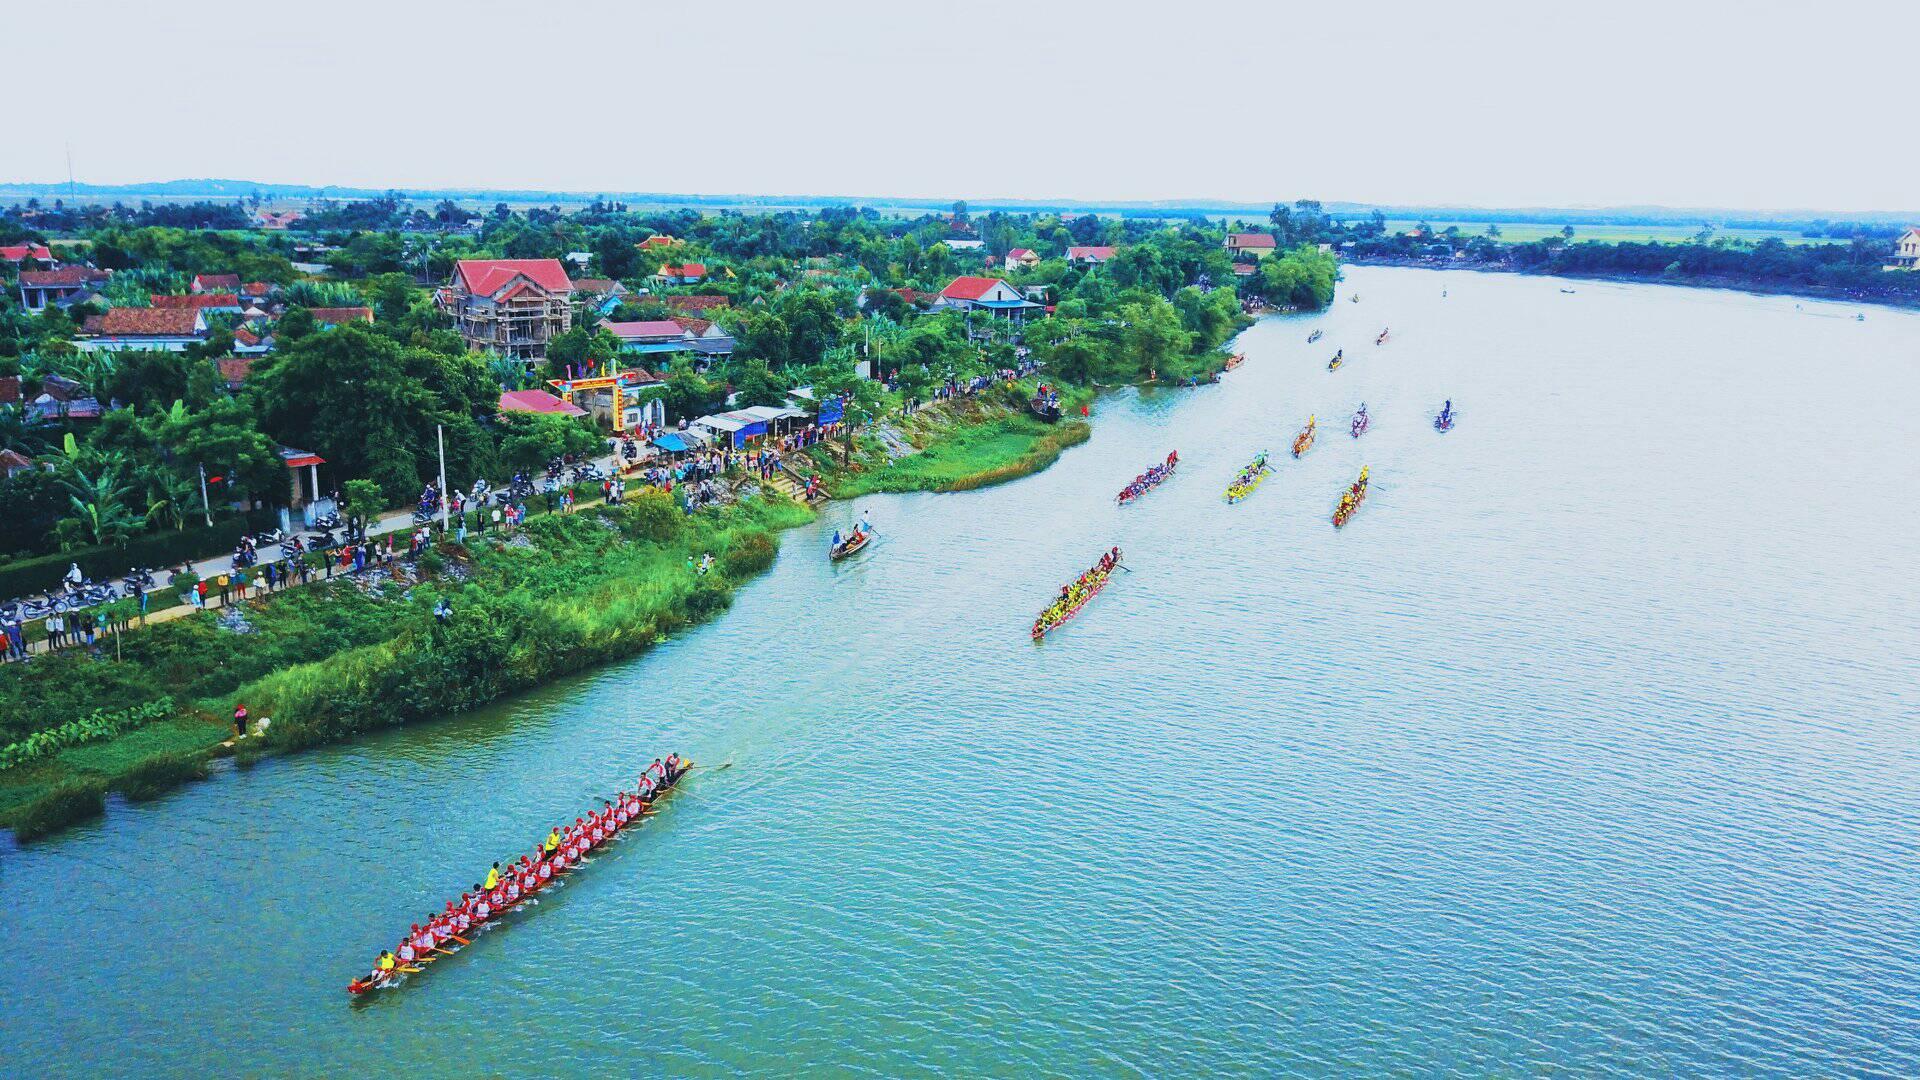 Hãy đến và thưởng thức hình ảnh đua thuyền truyền thống để trải nghiệm văn hoá đặc trưng của cộng đồng dân tộc ven sông, thác đổ. Những màn rồng bay, cãi cọ hấp dẫn và âm nhạc truyền thống sẽ đưa bạn đến với thế giới đầy màu sắc và sức sống.